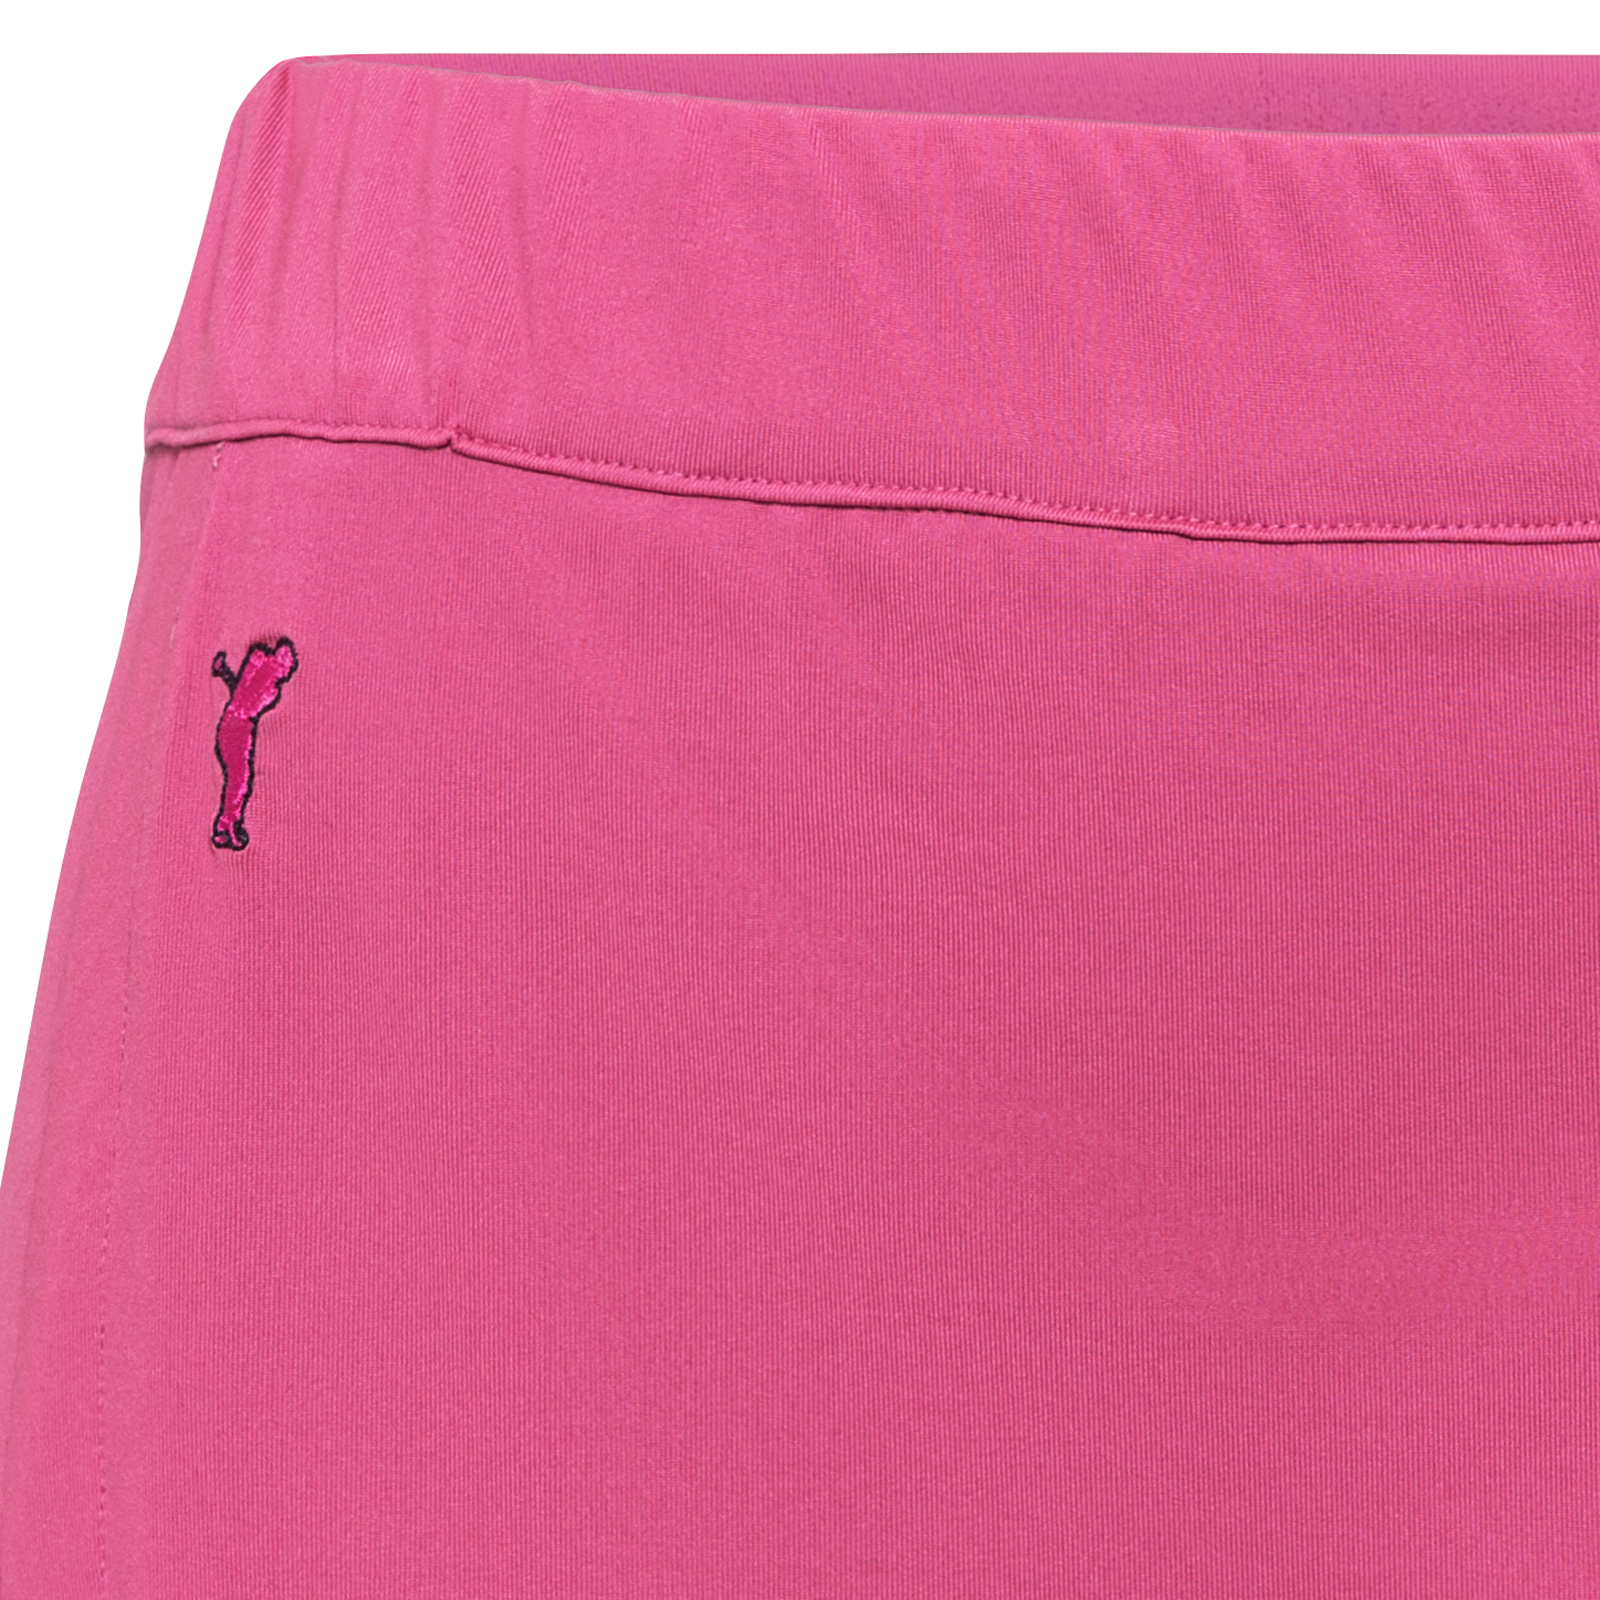 Falda pantalón de golf corta con protección UV para mujer